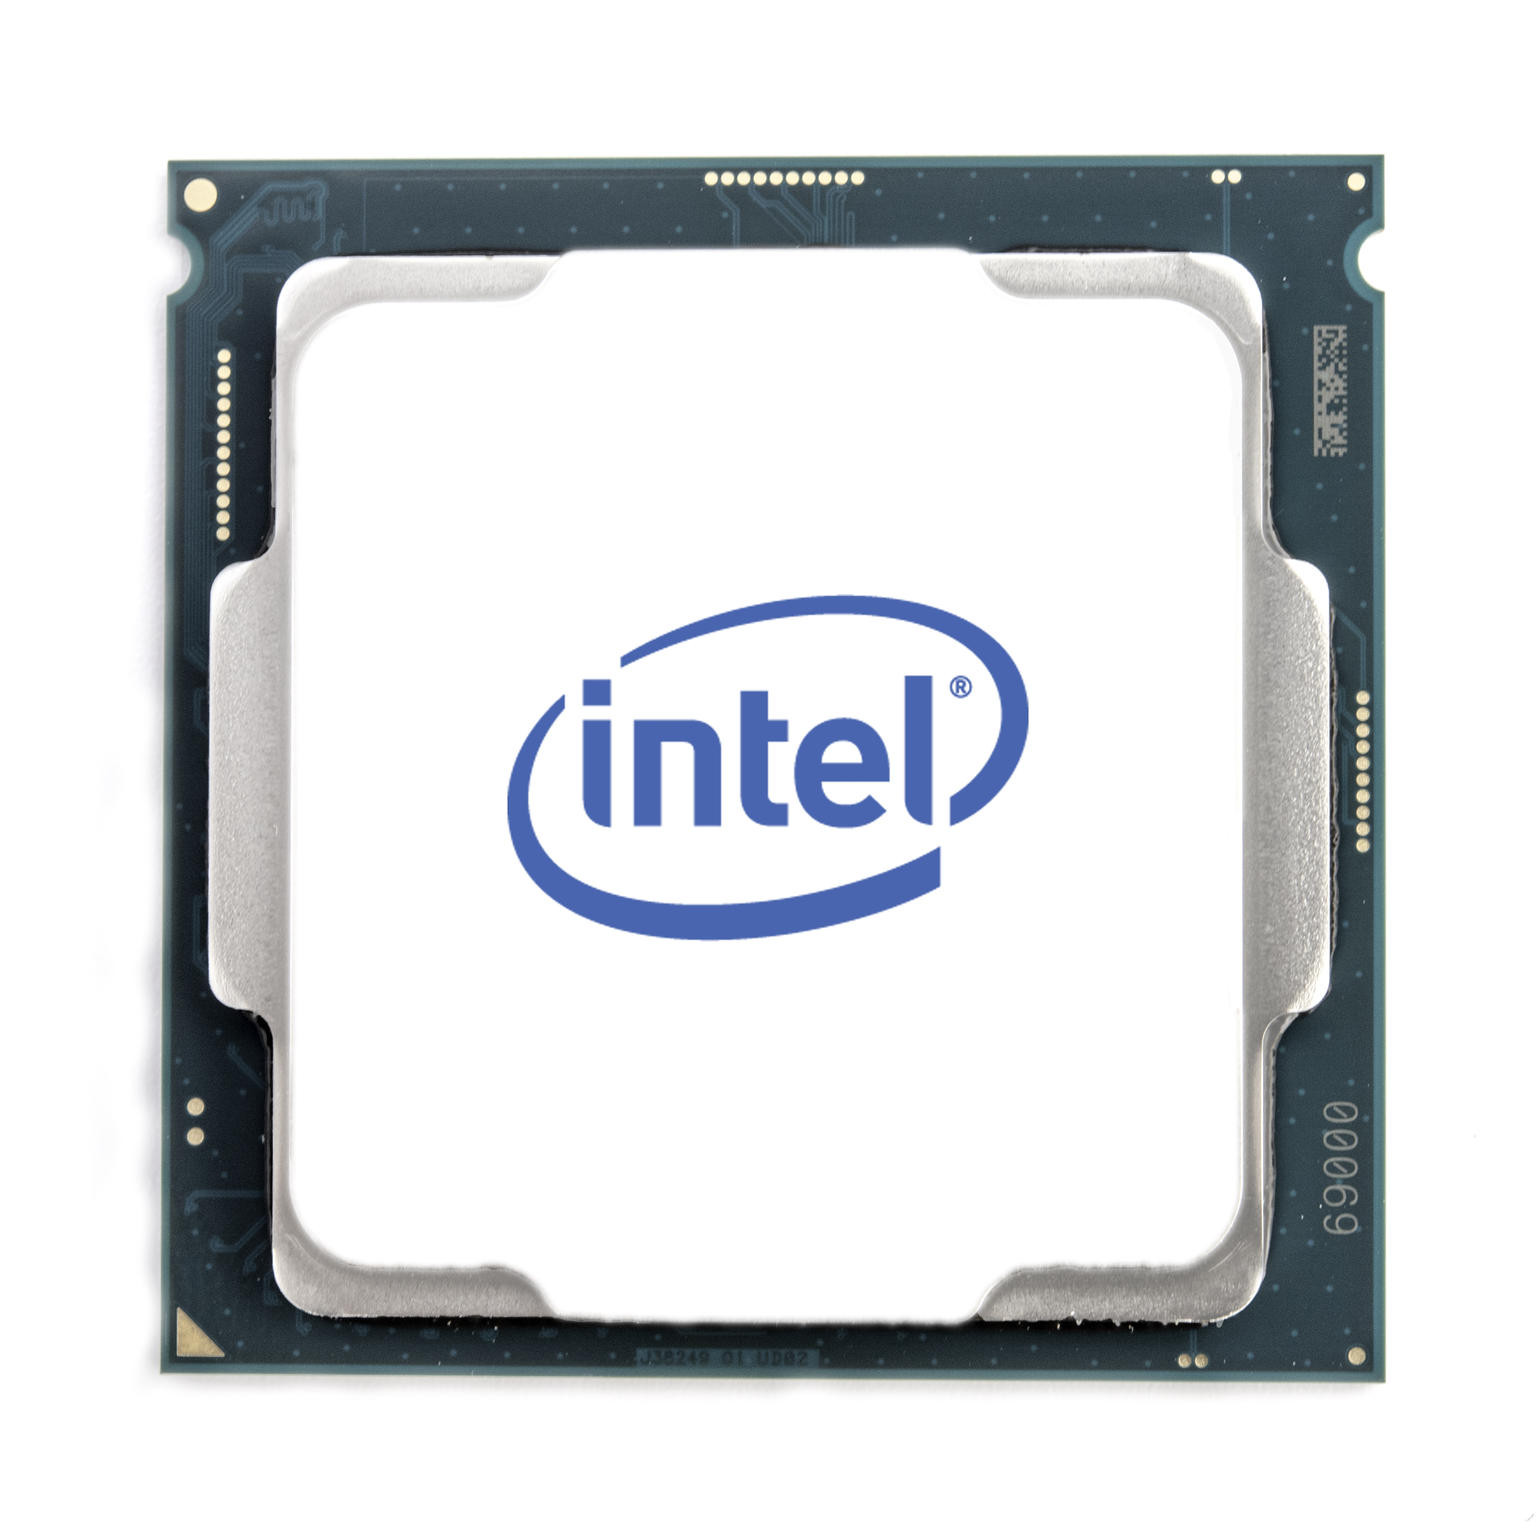 Intel Hexa Core i5-10400 processor